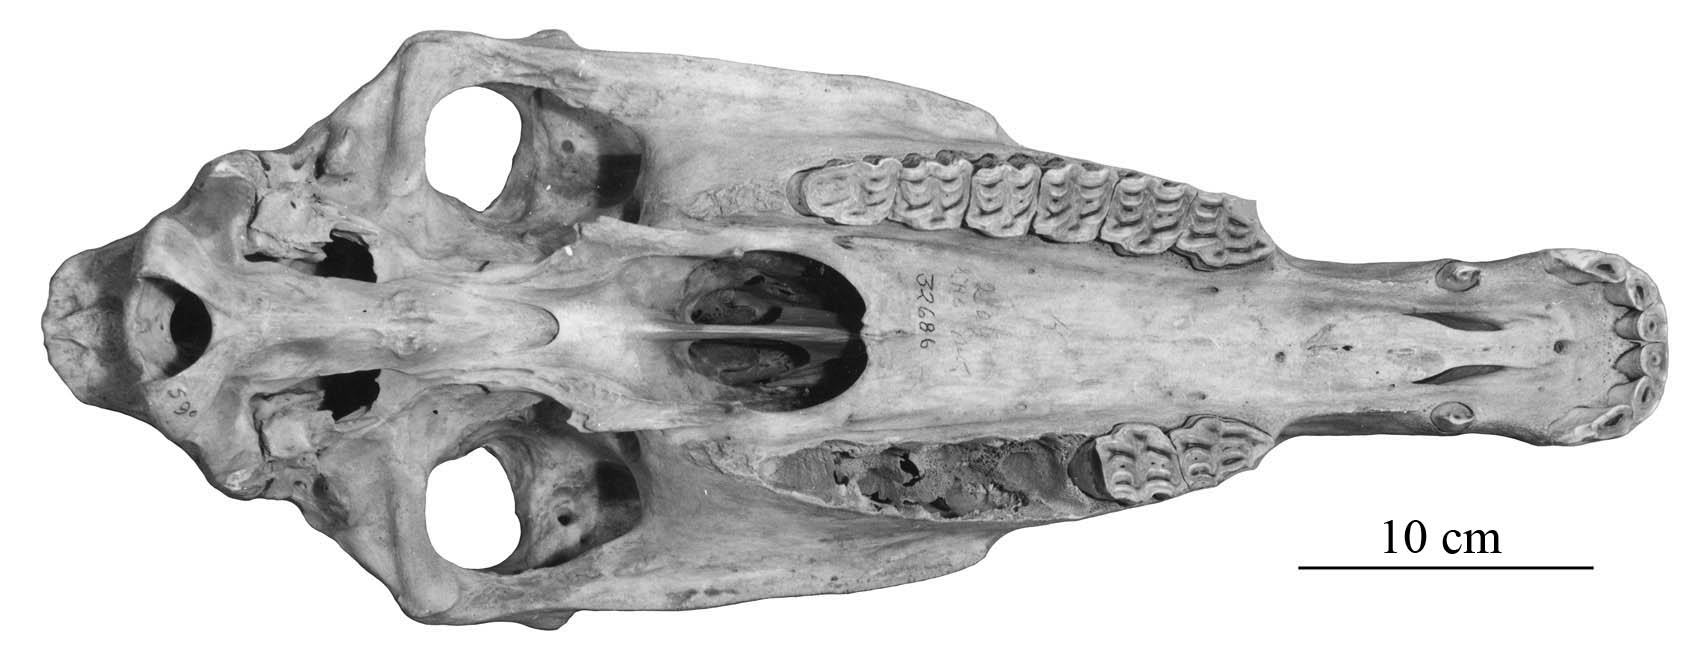 P41 AMNH 32686 CraOcc